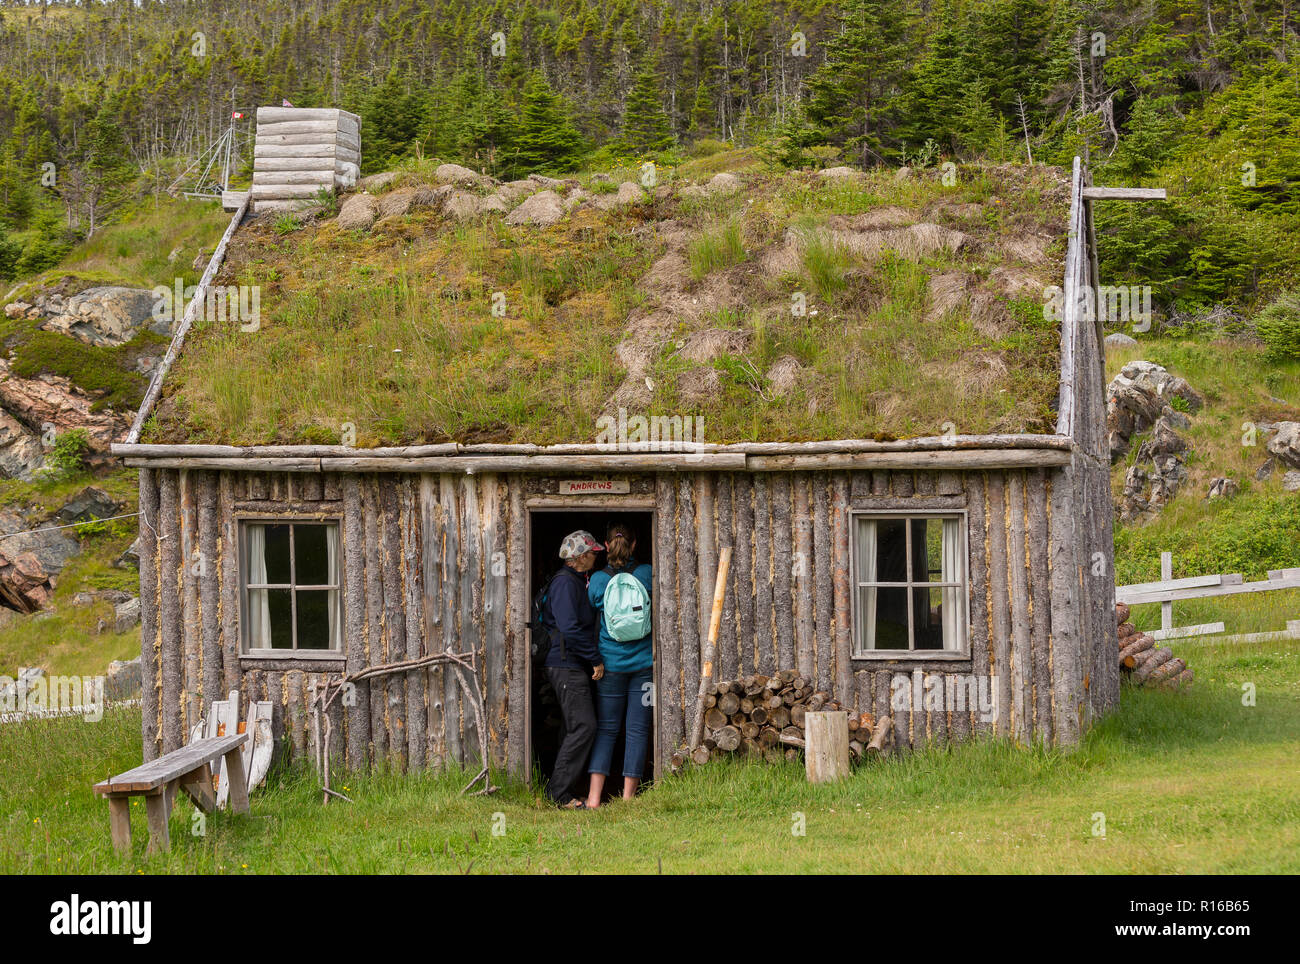 CAPE RANDOM, Terre-Neuve, Canada - Touristes entrez le cabin, Random Passage, cinéma, réplique d'un village de pêcheurs. Banque D'Images